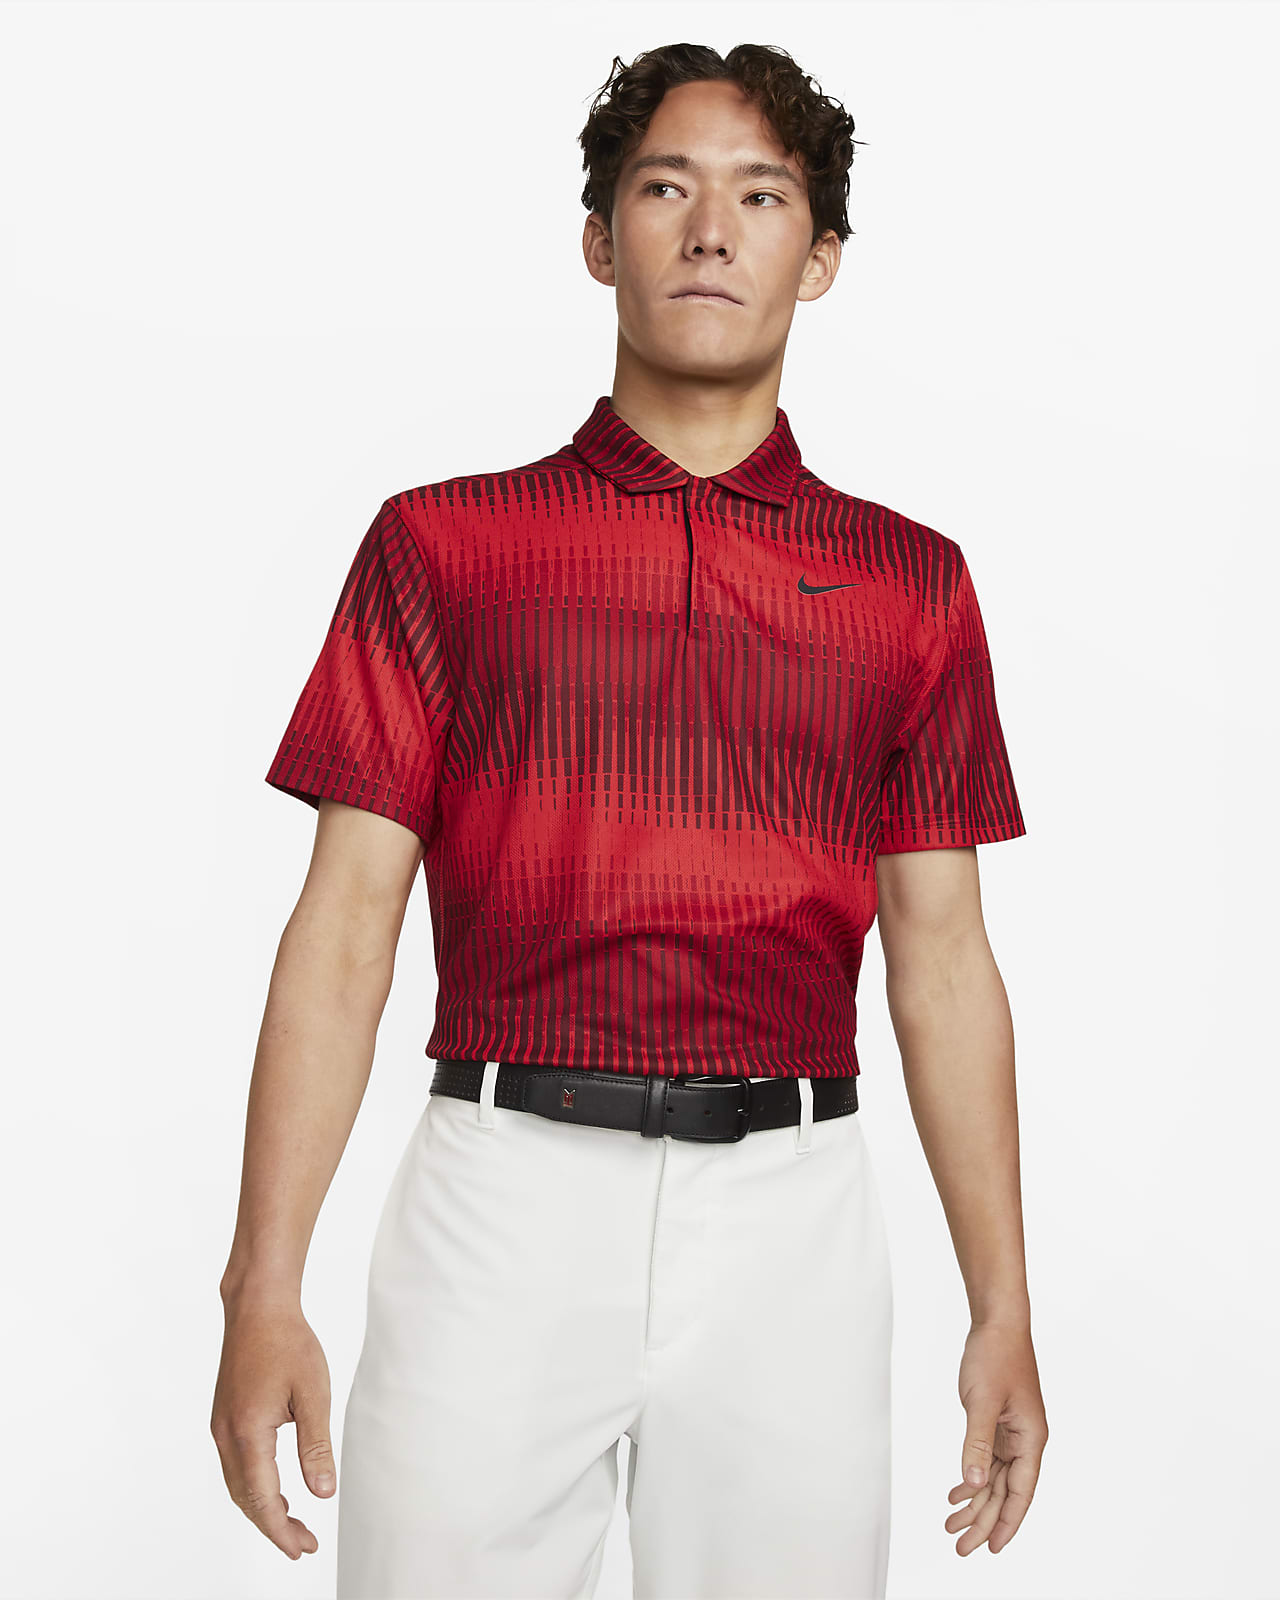 Polo de golf Nike Dri-FIT ADV Tiger Woods pour Homme